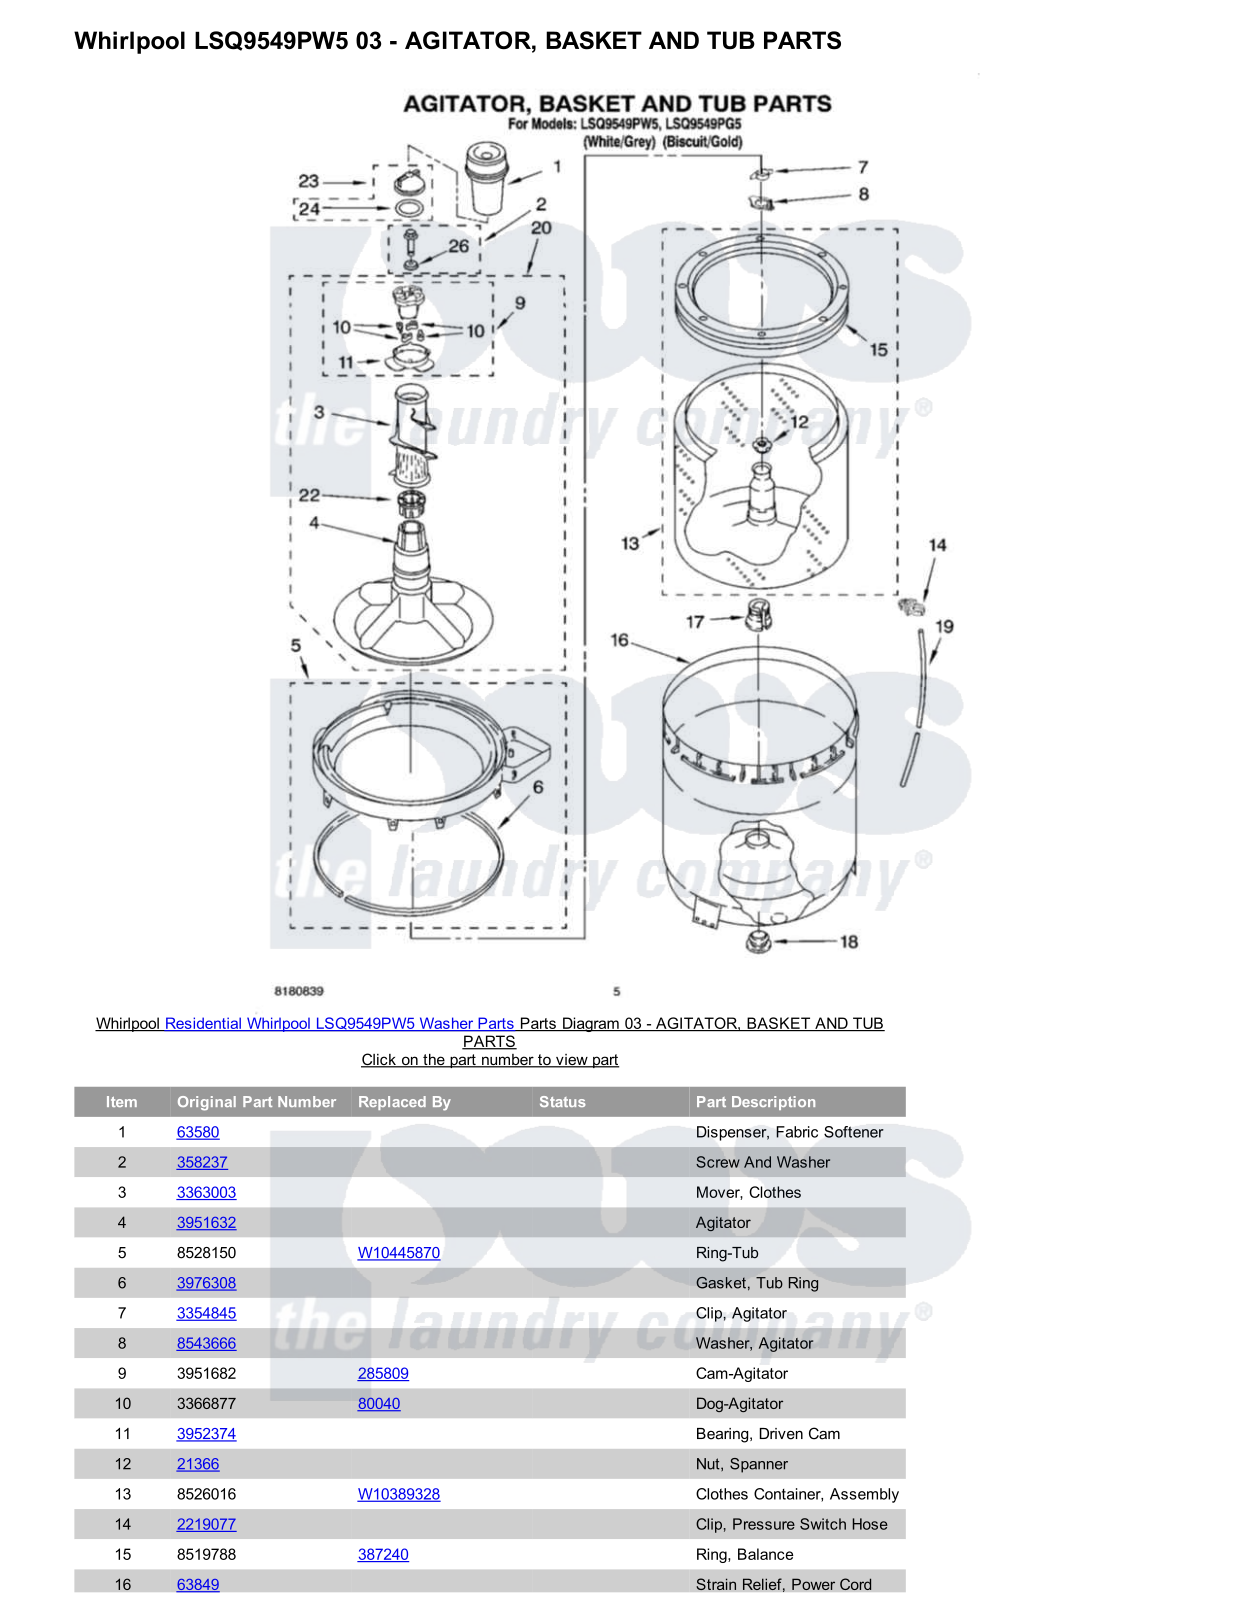 Whirlpool LSQ9549PW5 Parts Diagram